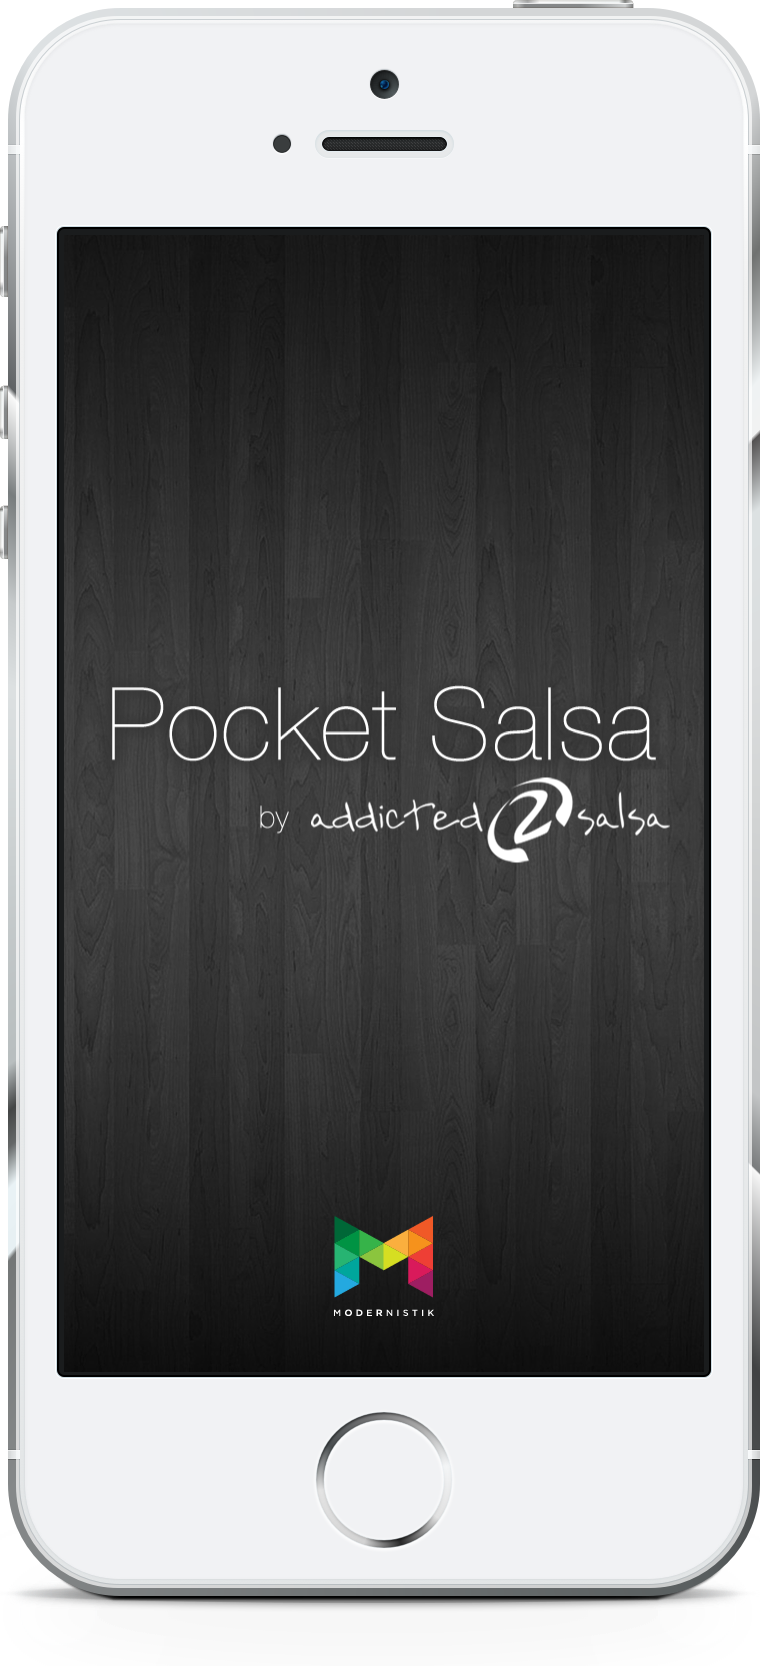 Modernistik Project: Pocket Salsa (splash)